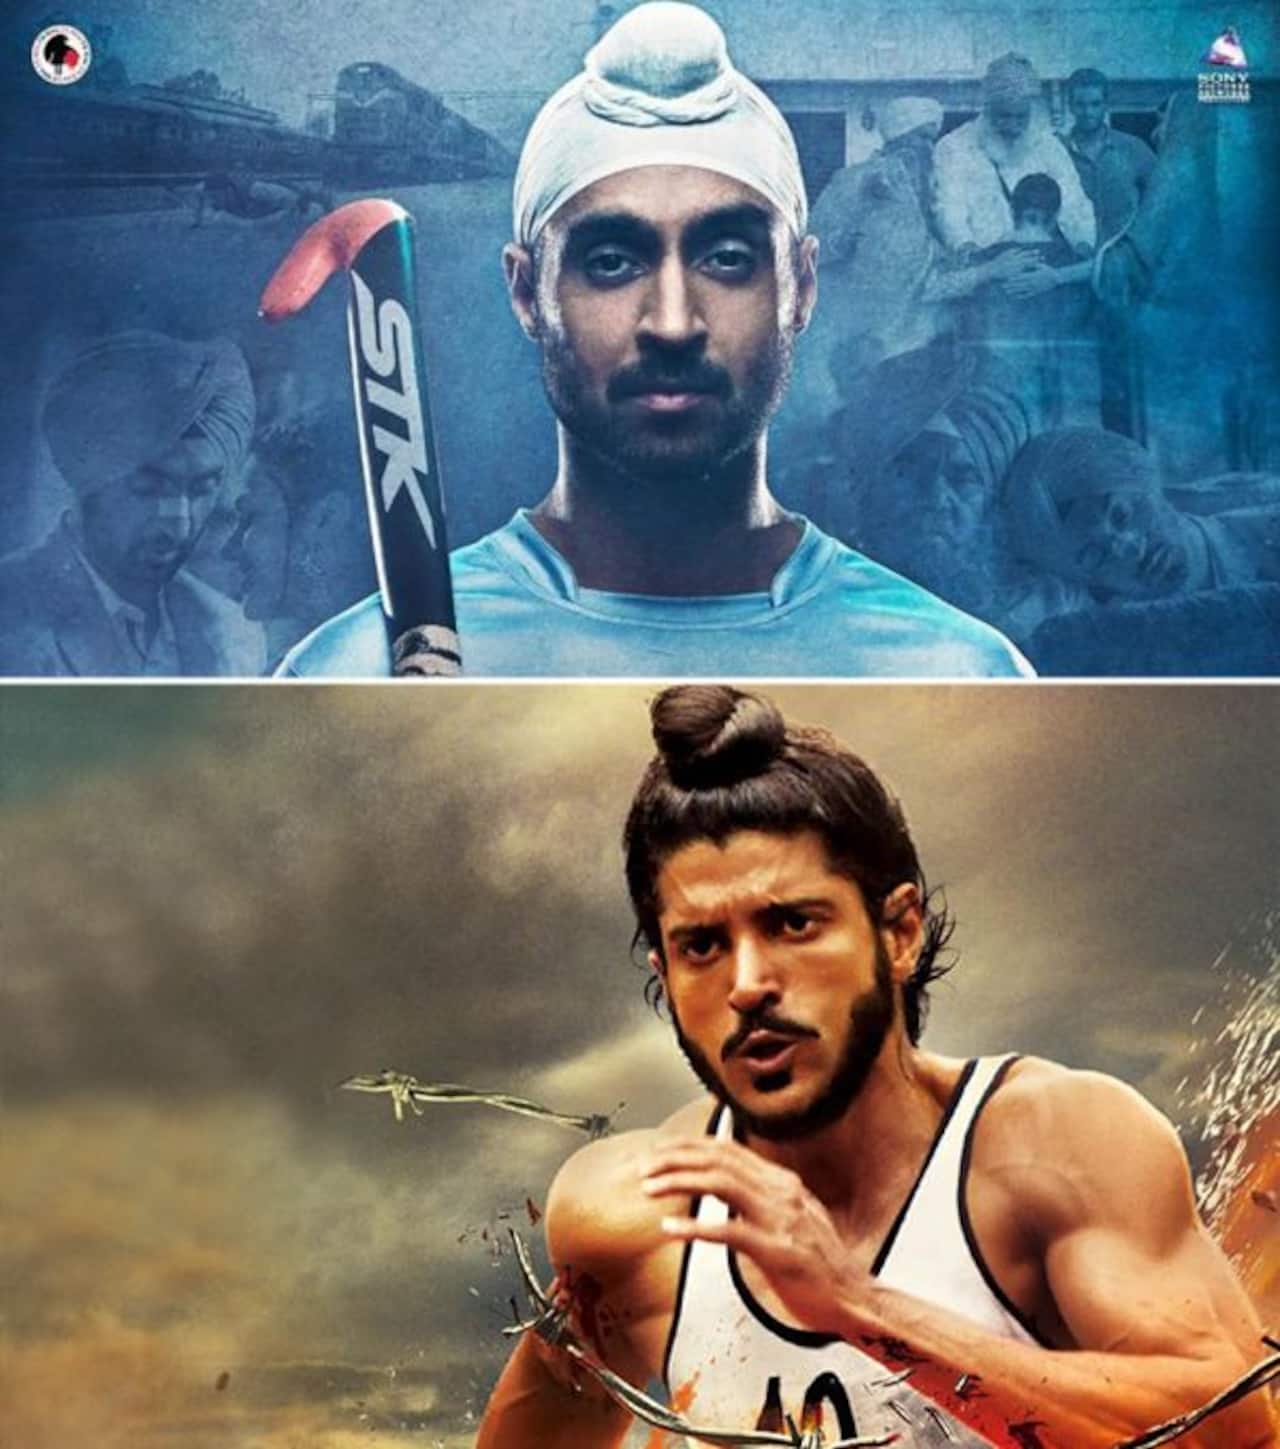 सिनेमा में 'फ्लाइंग सिख' और 'फ्लिकर सिंह' को लेजेंड बनाने में था पाकिस्तान का हाथ, जानिए ऐसा क्यों कह रहे हैं हम!